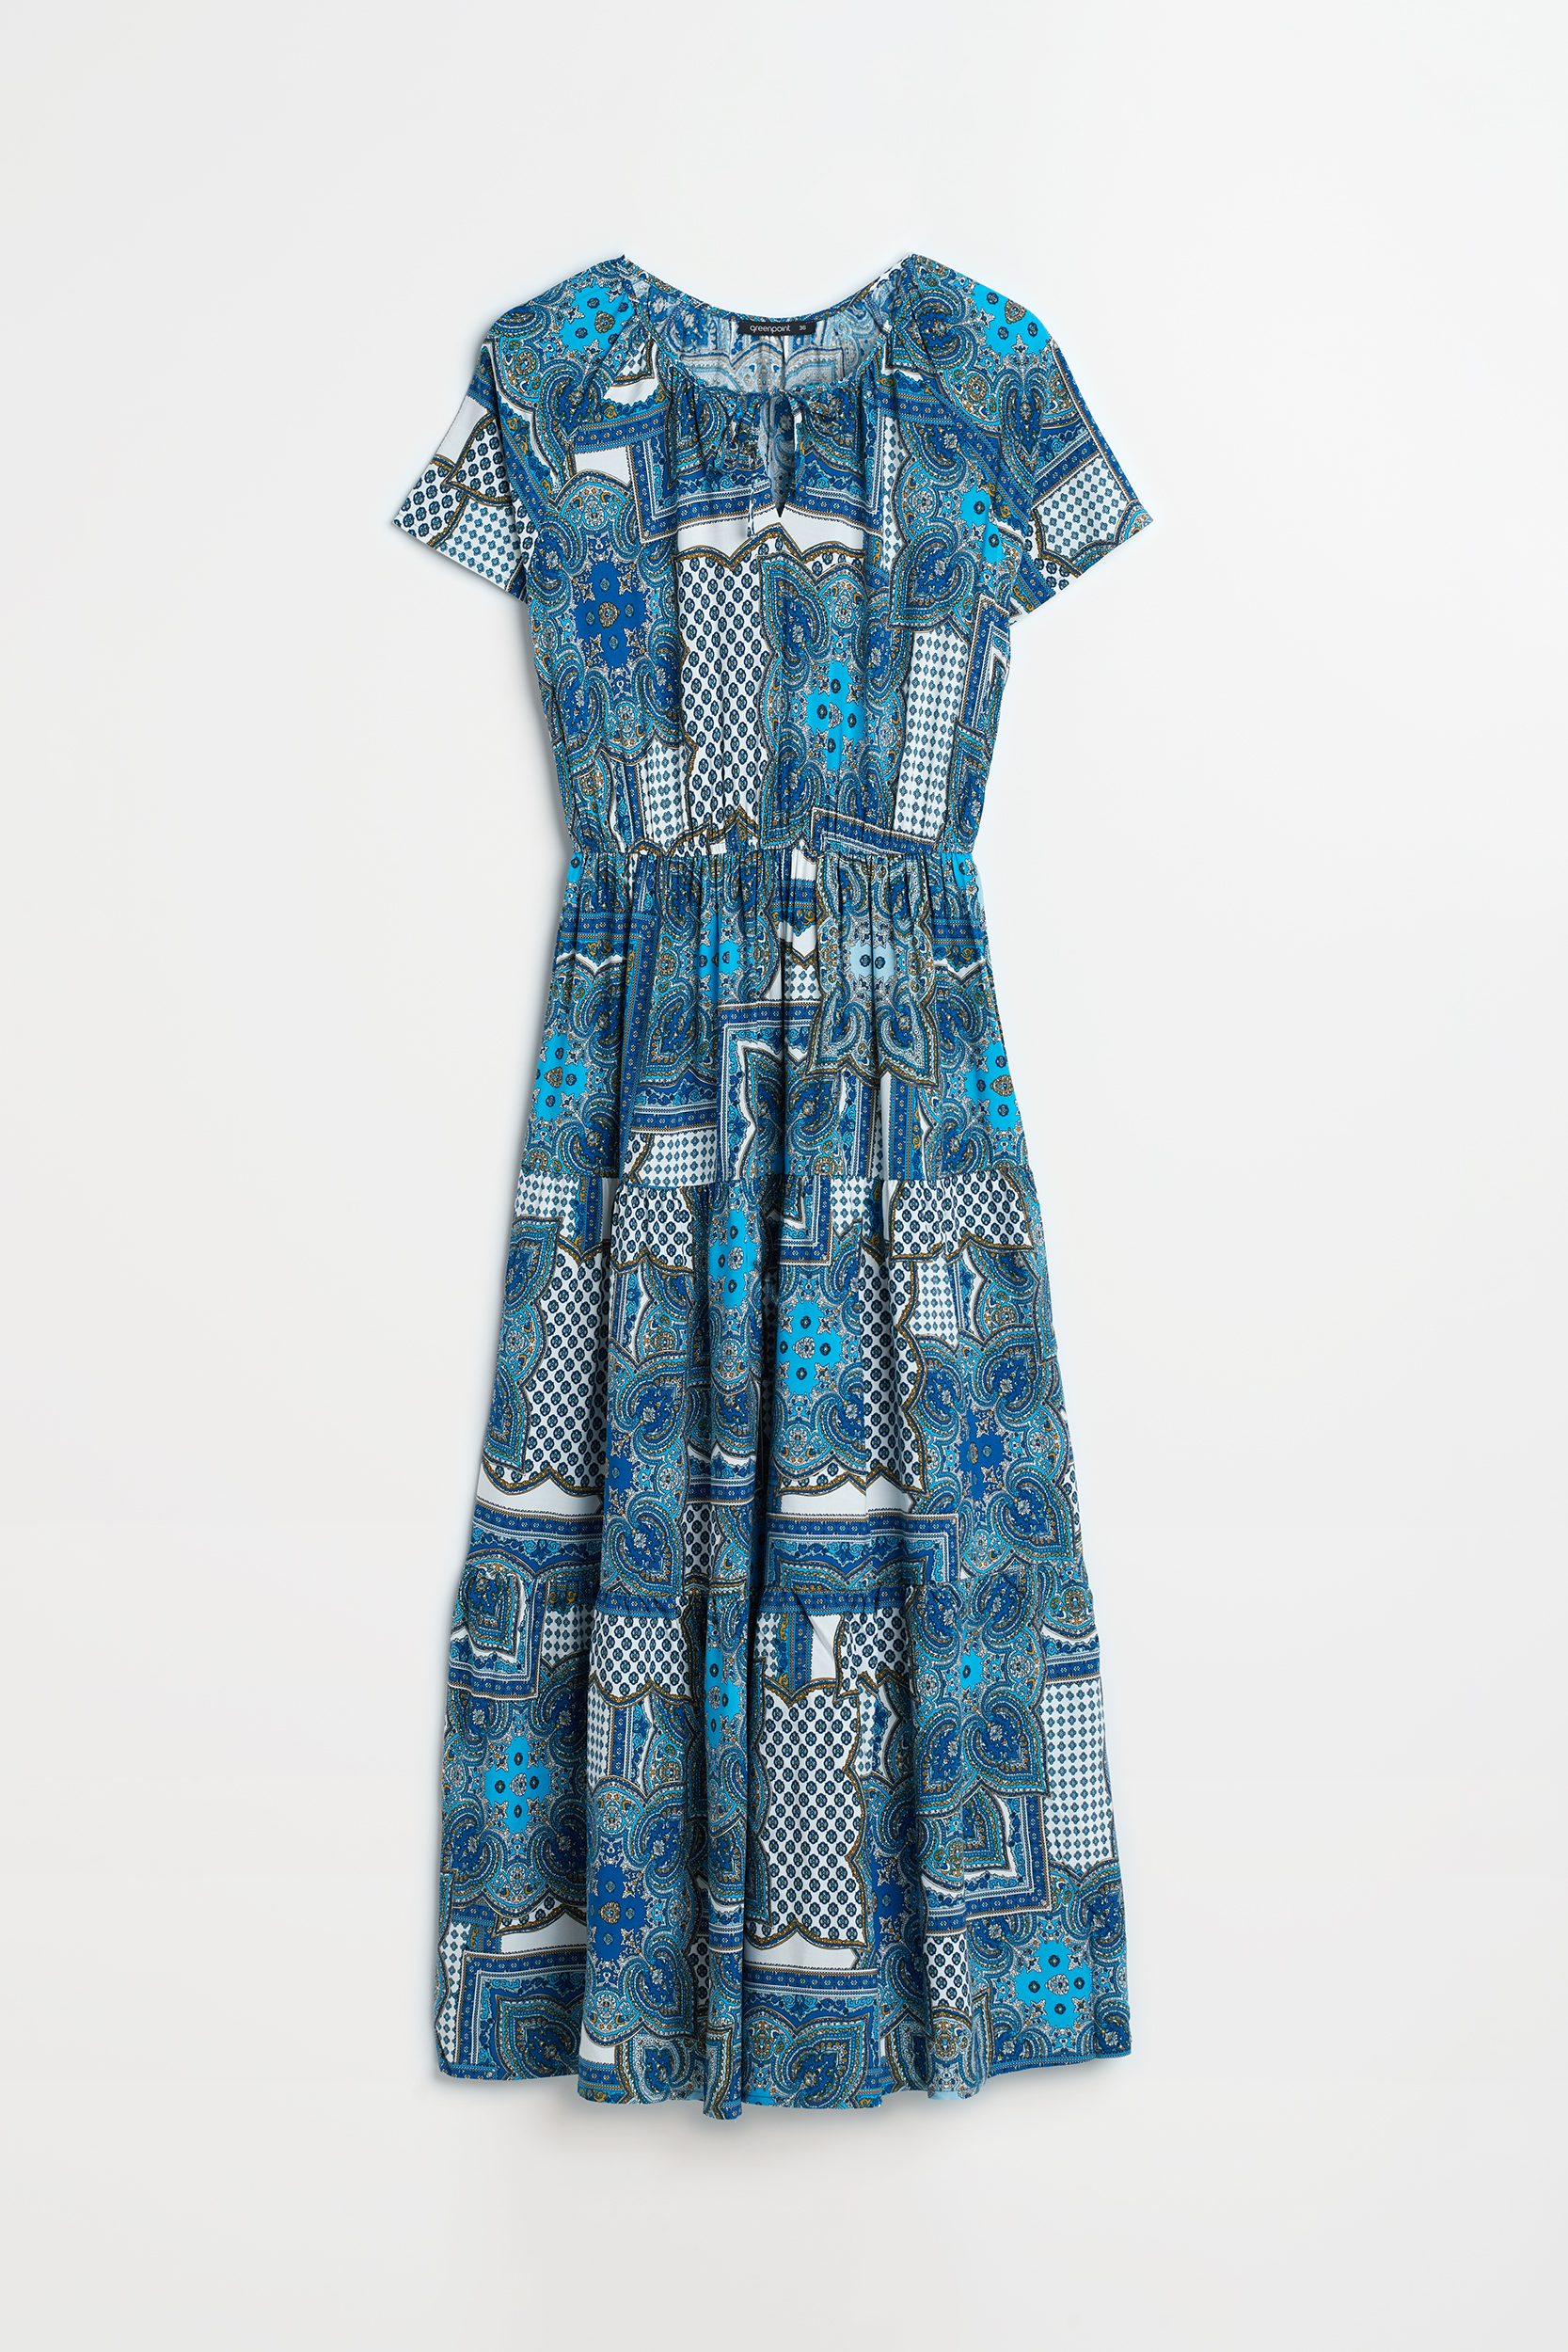 Błękitna sukienka maxi z wiązaniem przy dekolcie